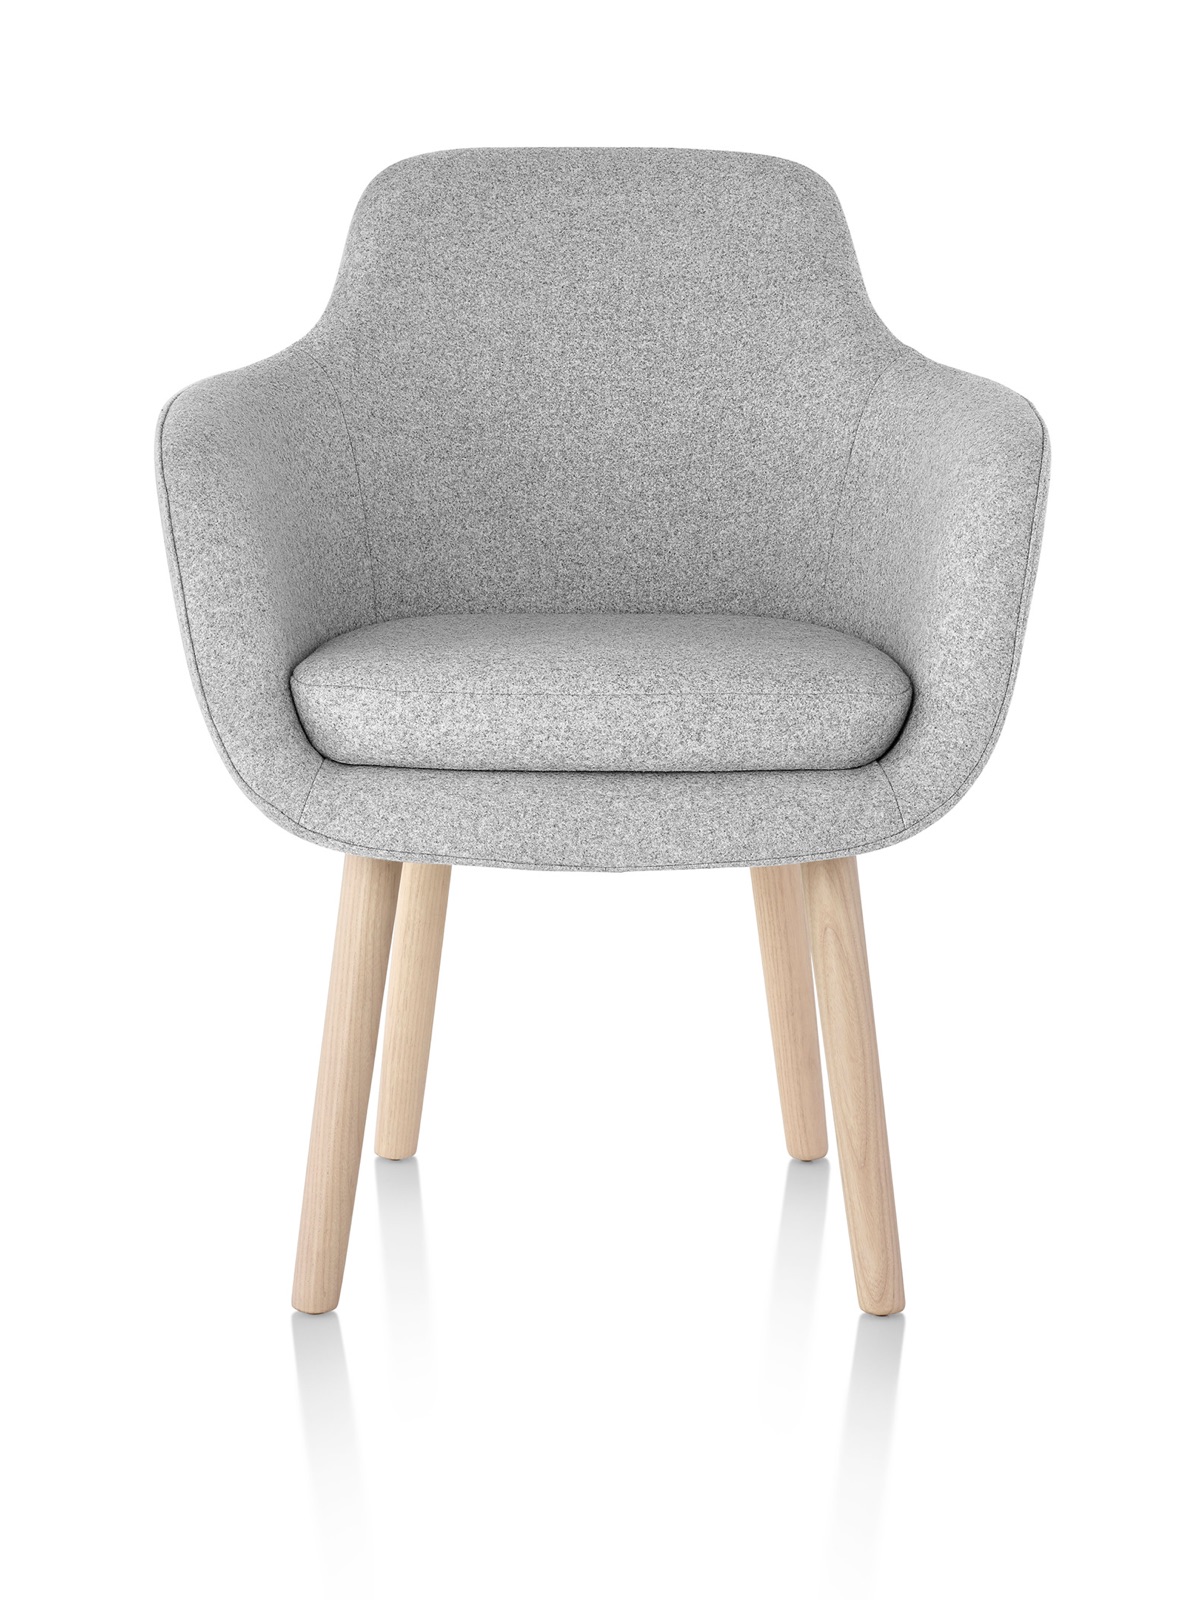 Una sedia laterale Saiba di colore grigio chiaro, caratterizzata da un sedile avvolgente rivestito e gambe in legno, viste frontalmente.